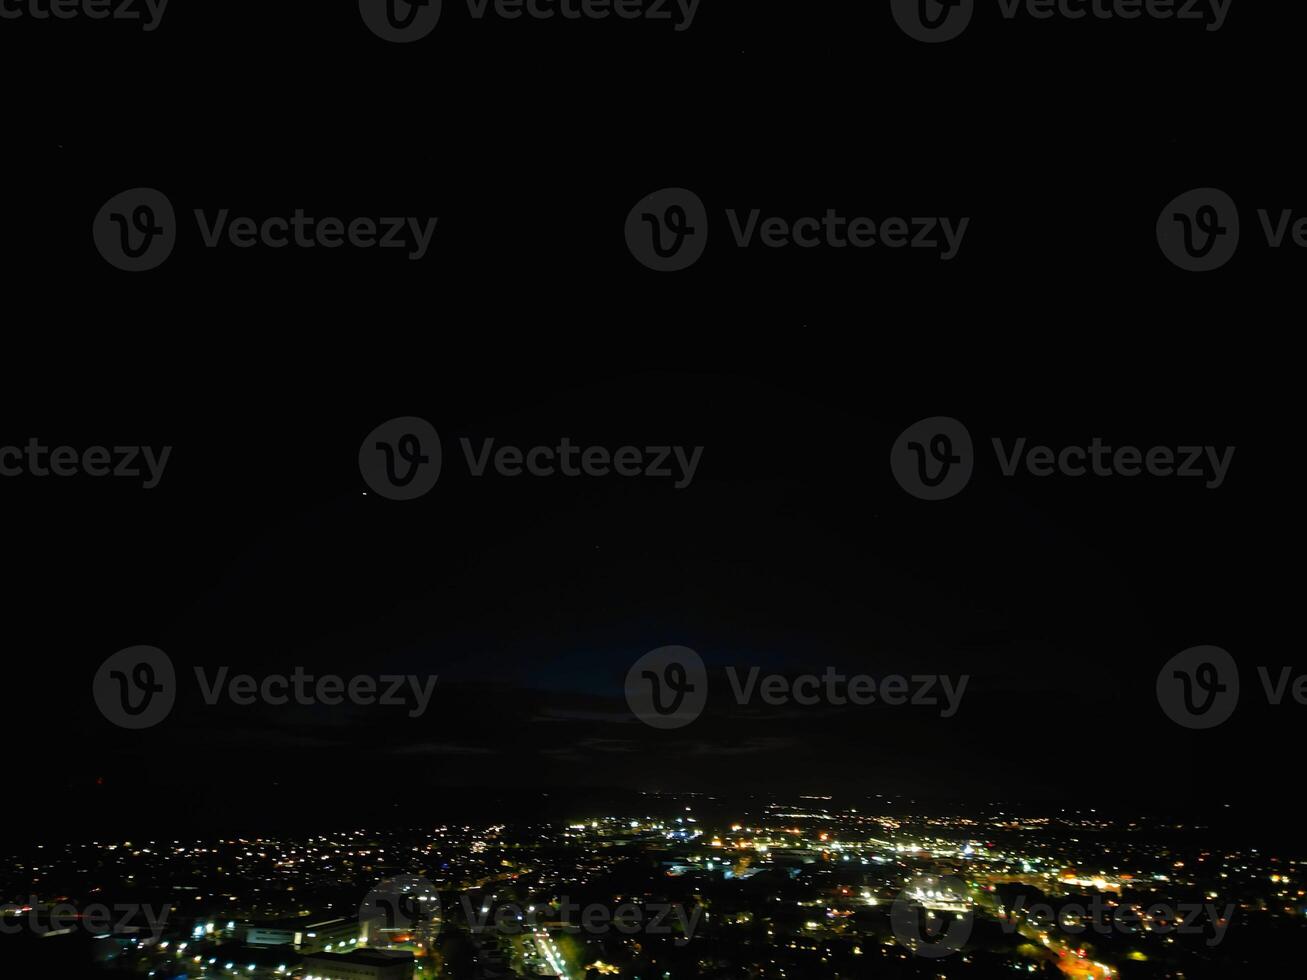 antenn natt se av upplyst central aylesbury stad av England förenad rike. april 1:a, 2024 foto